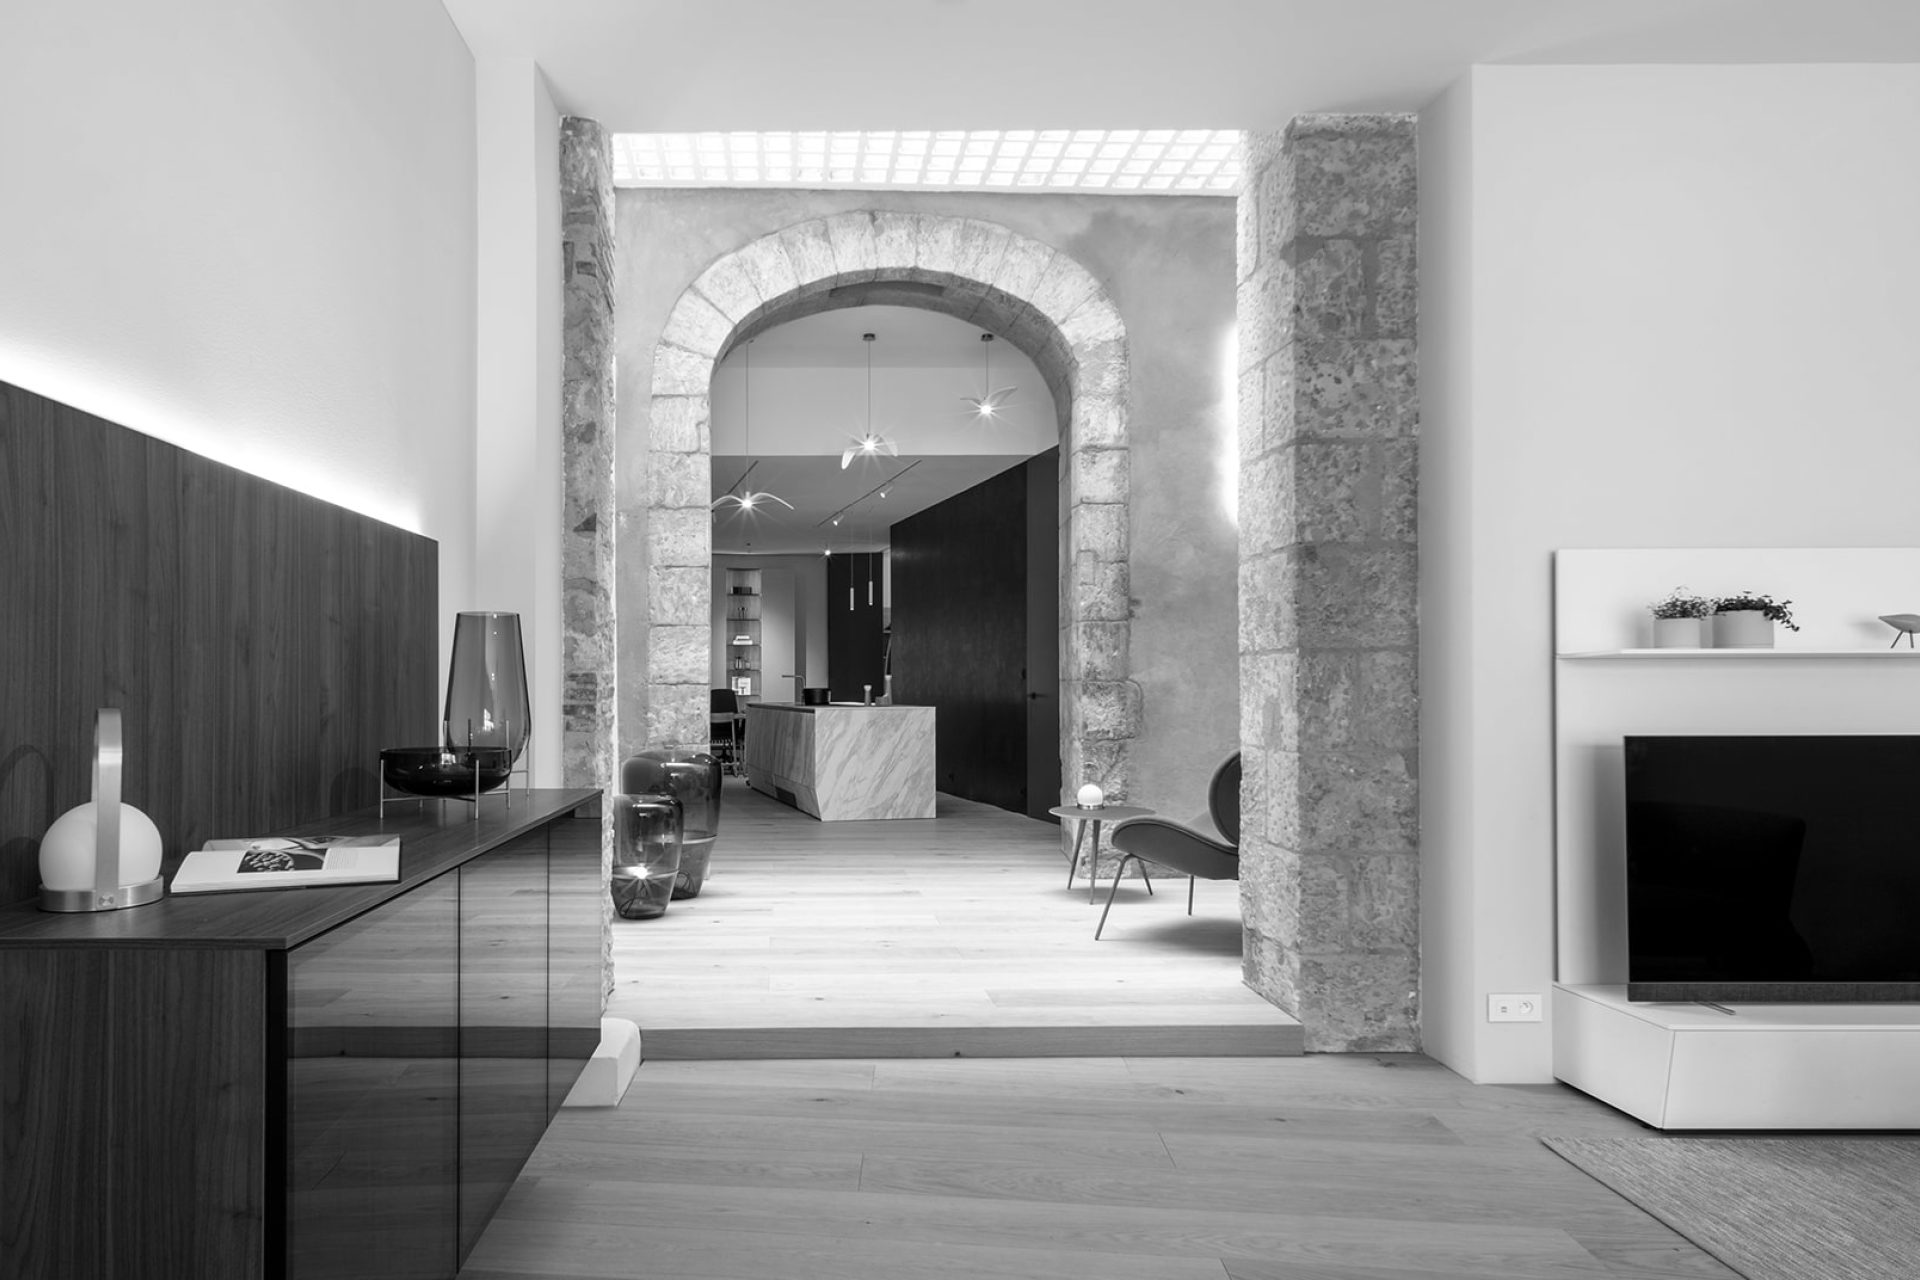 Showroom de equipamiento de interiores, cocinas Santos y mobiliario de diseño en Auch, cerca de Toulouse